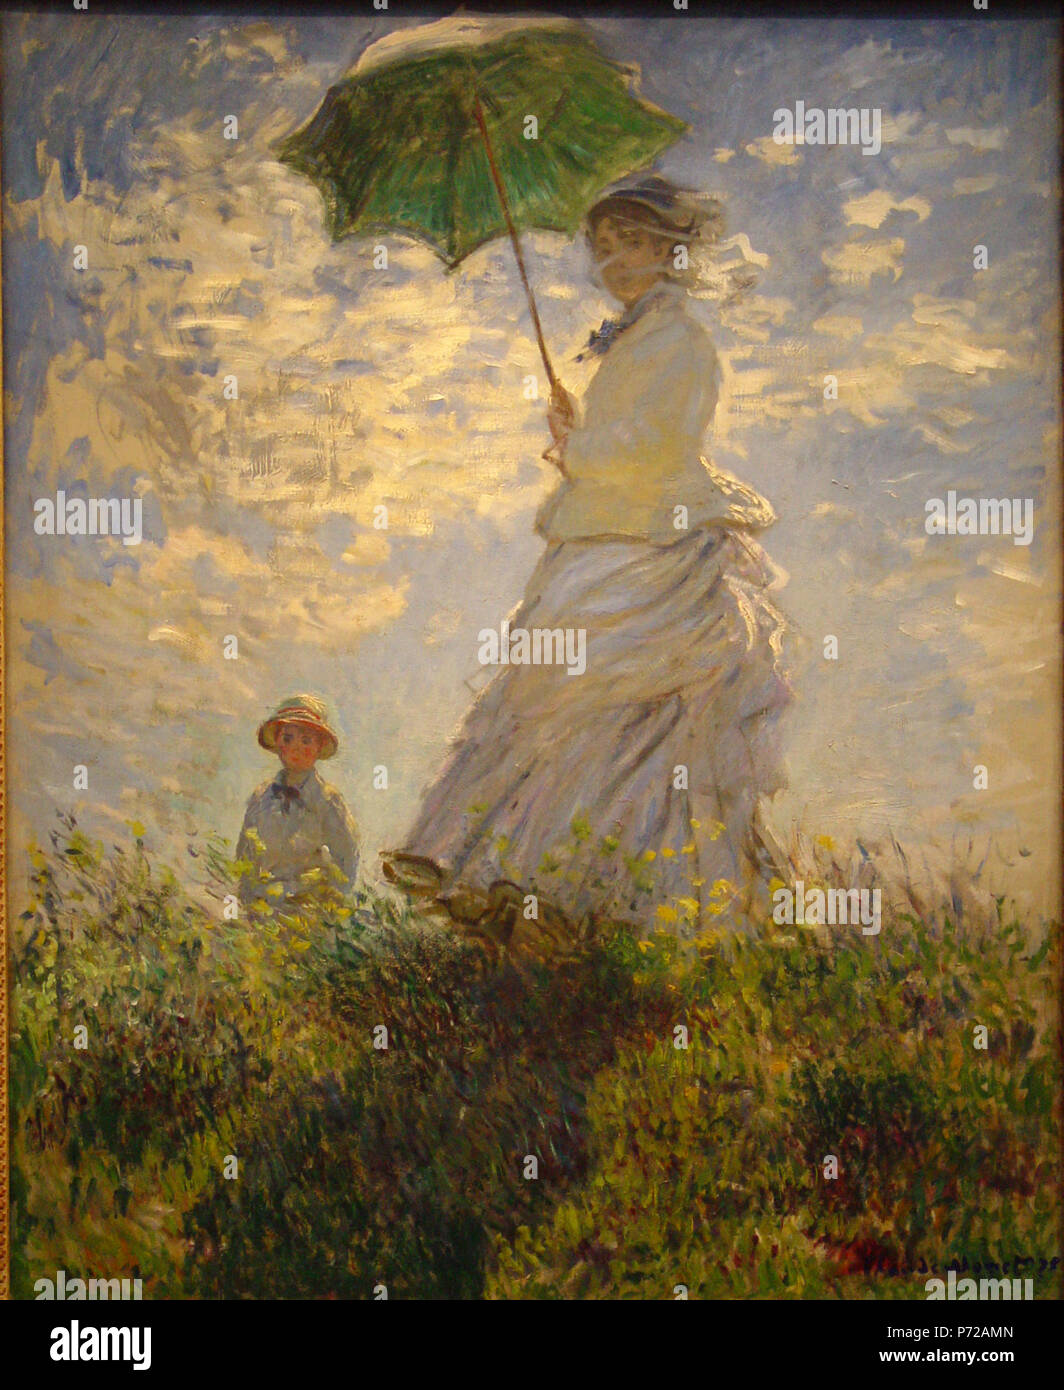 Englisch: Frau mit Sonnenschirm Français: Femme avec un-Sonnenschirm 1875  166 Monet Regenschirm Stockfotografie - Alamy